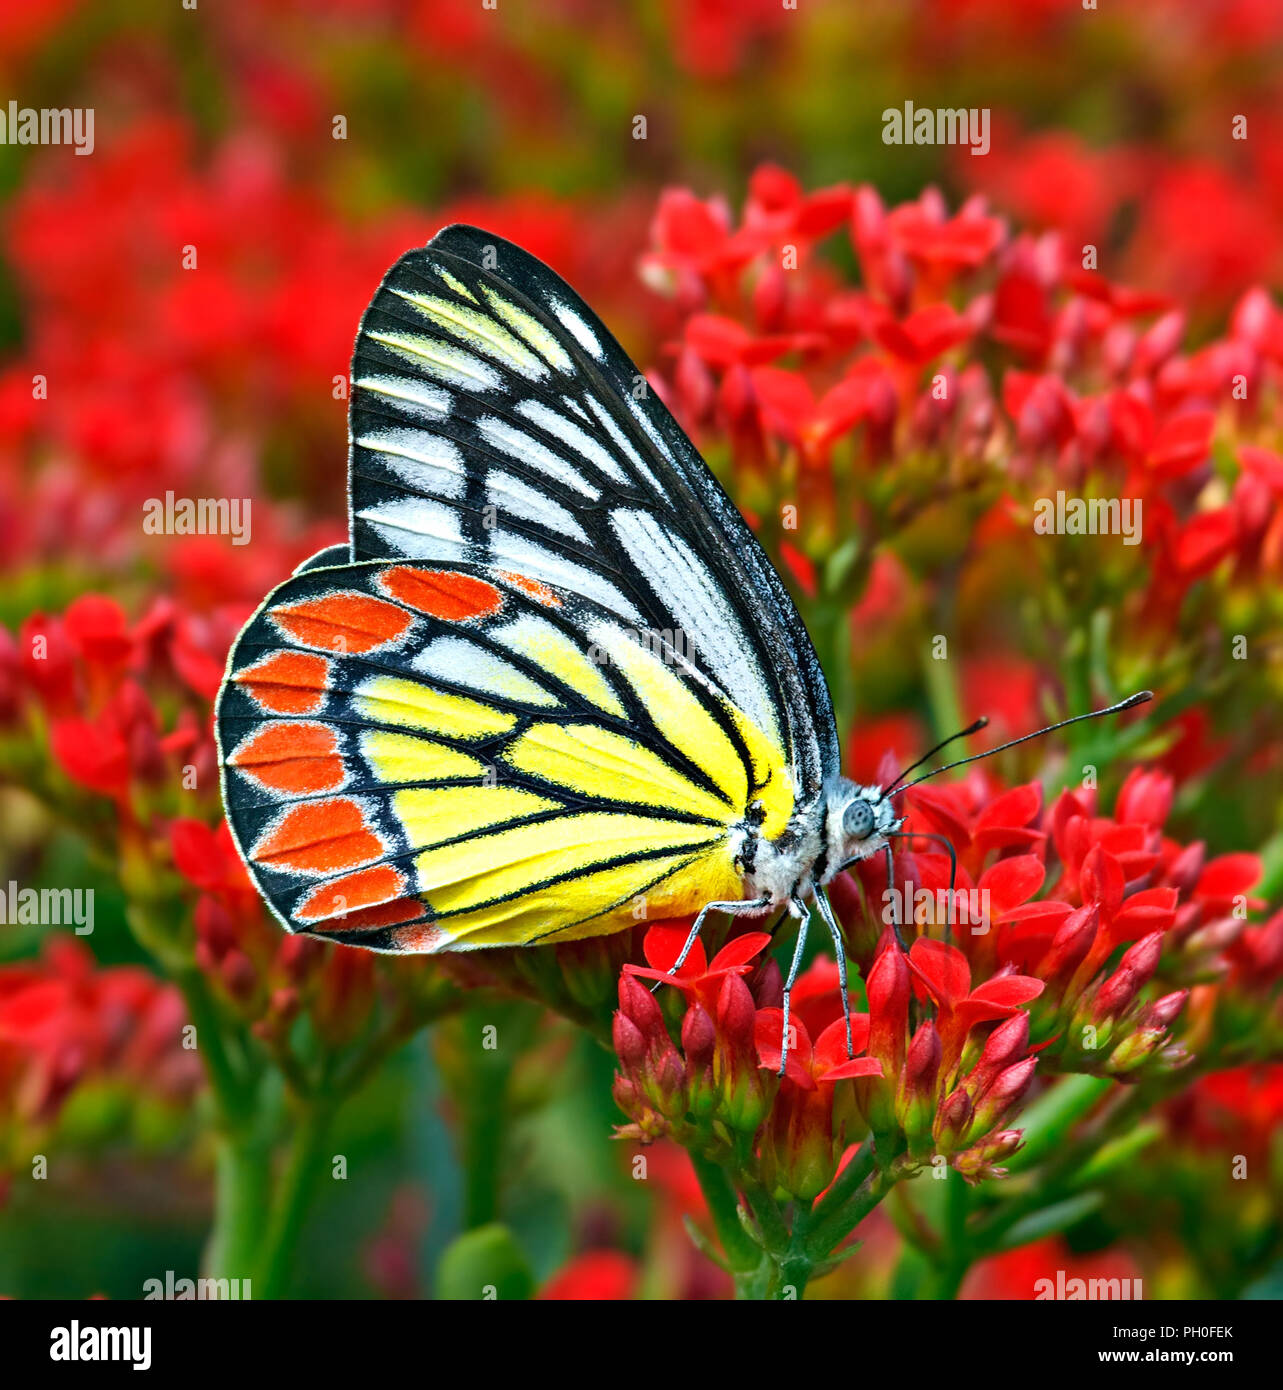 Delias eucharis ou Jézabel commune echelle papillon dans les fleurs rouges. Banque D'Images